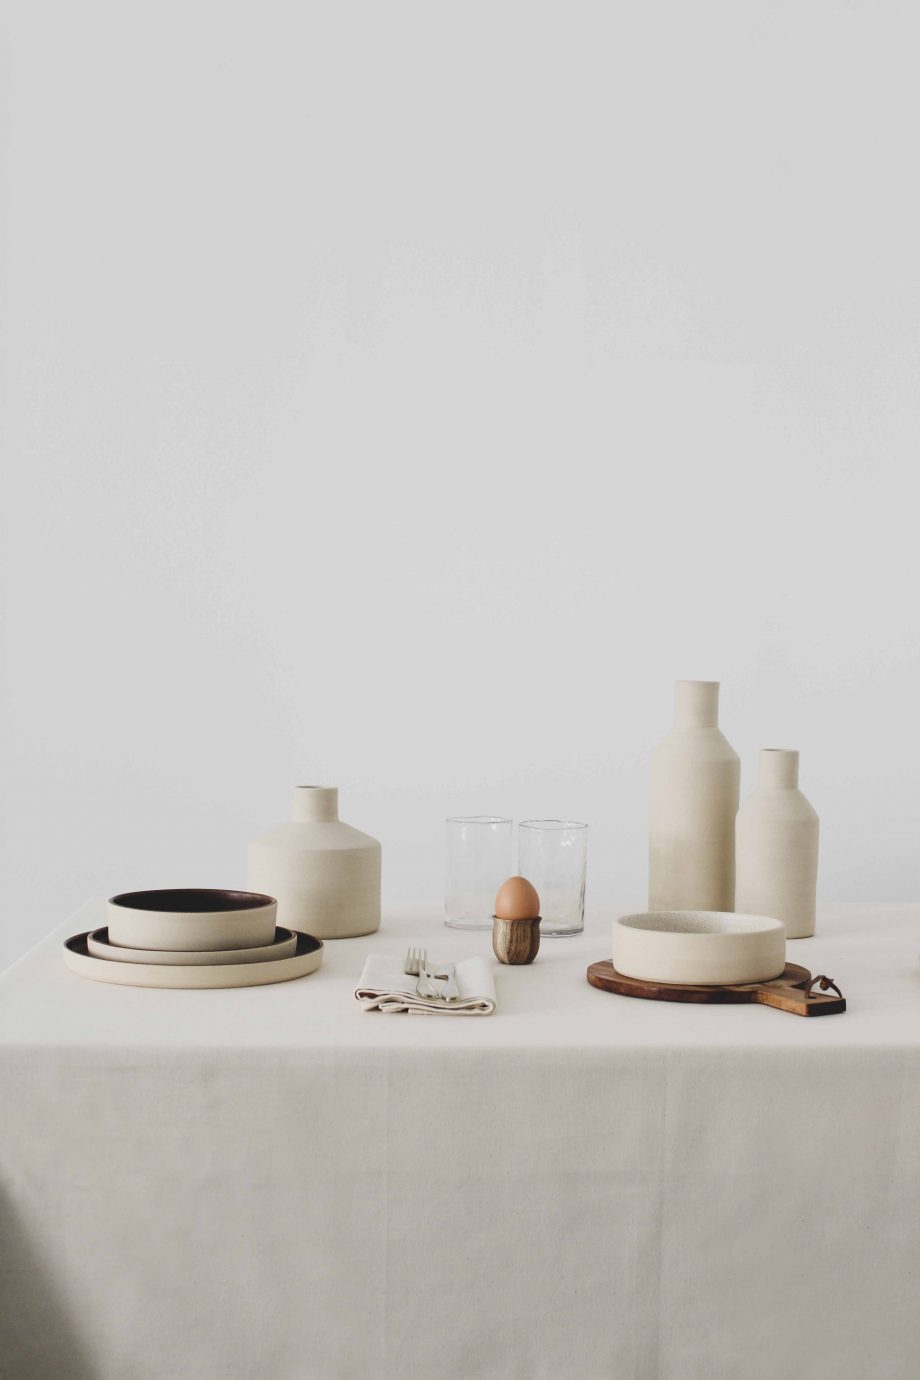 Services de table et céramiques vases fabriqués par la marque de décoration O Cactuu.